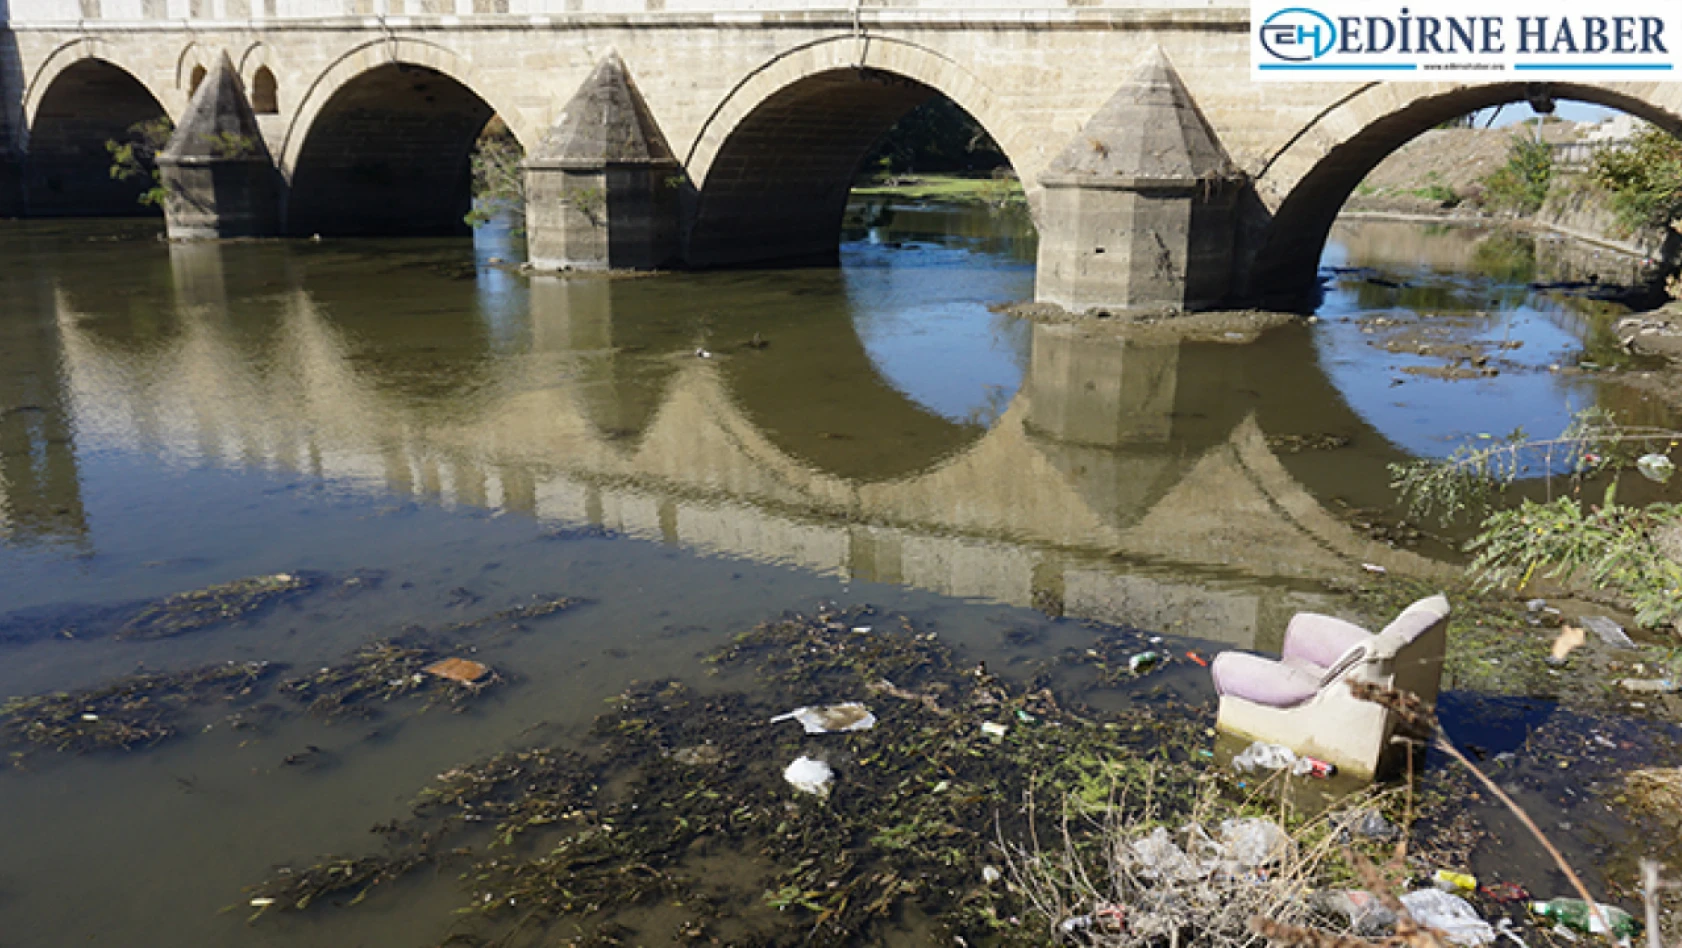 Edirne'de kuraklıkla boğuşan nehirler çöplerle kaplandı